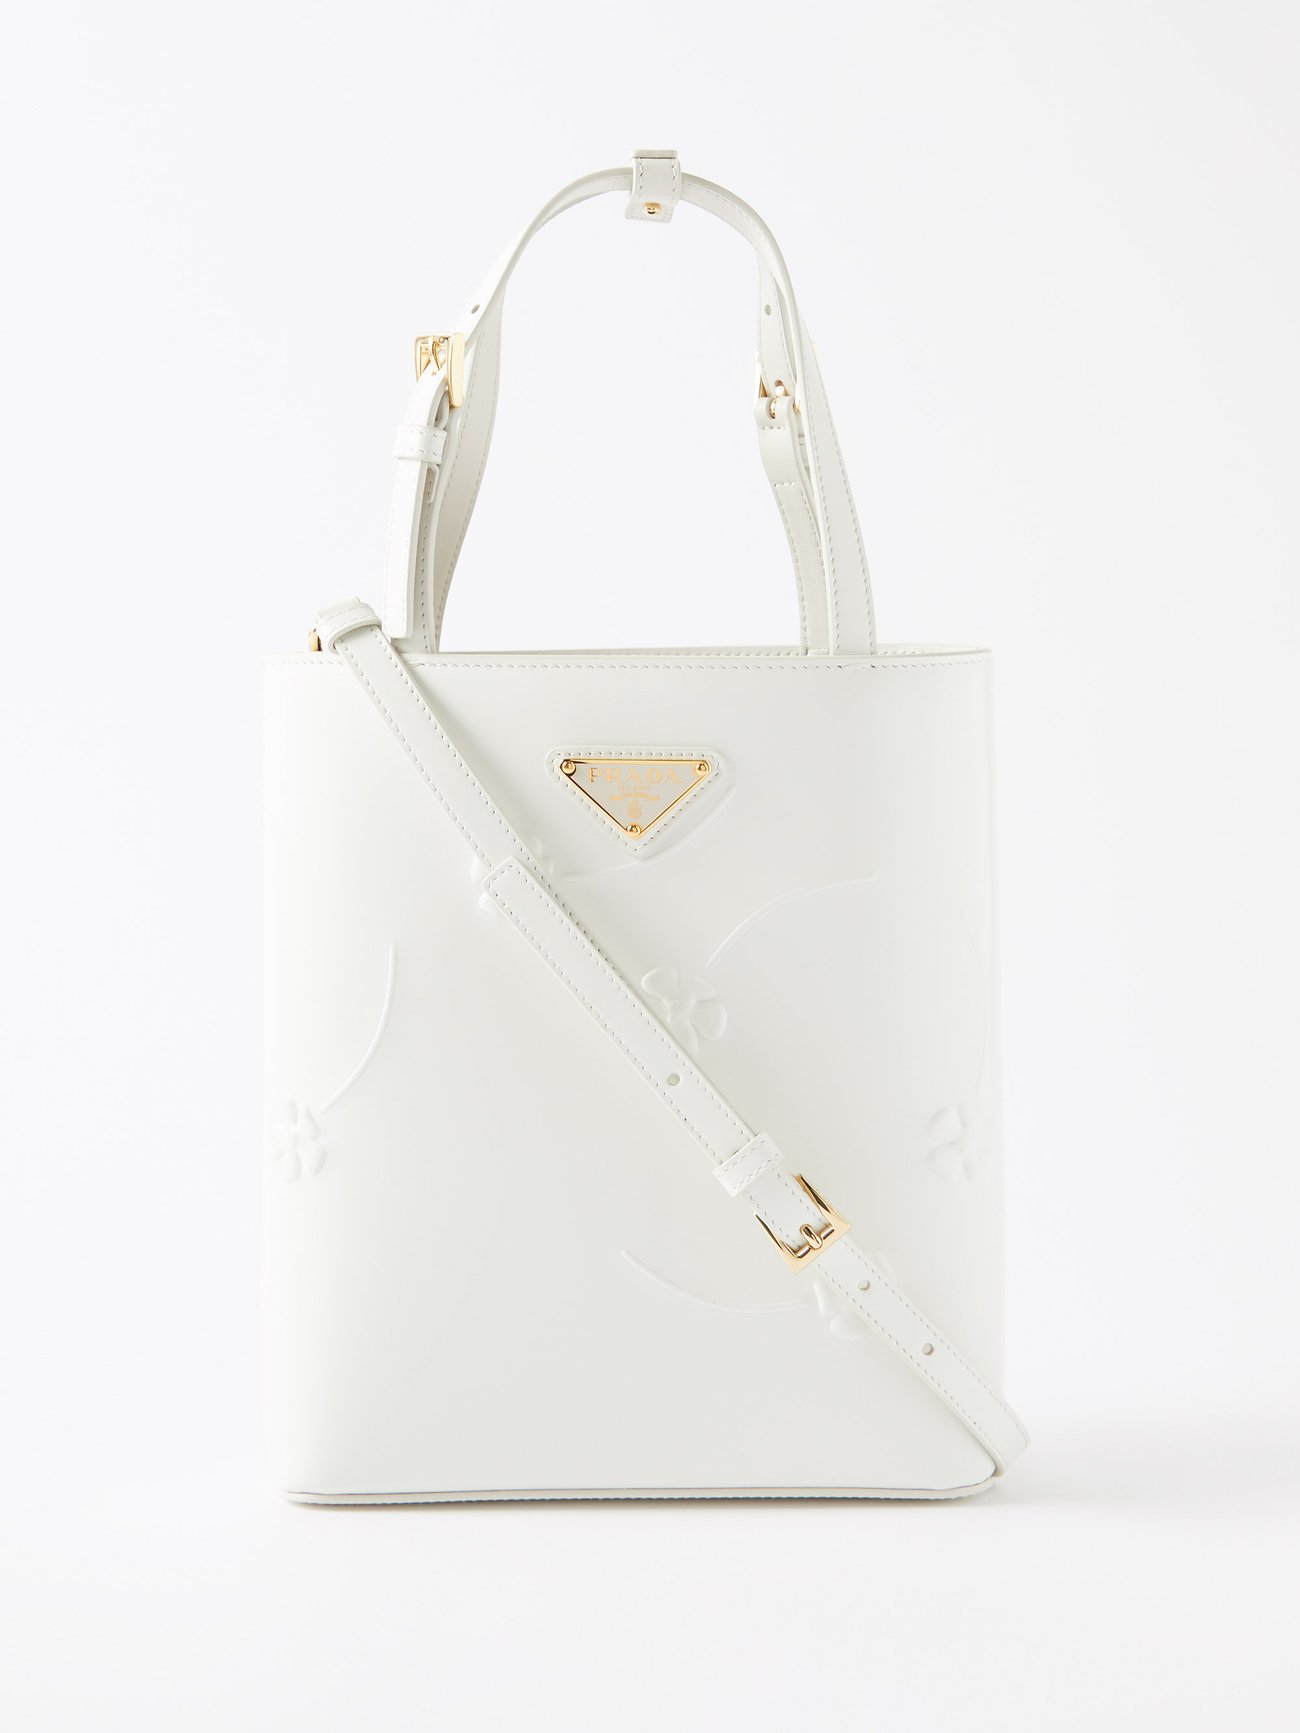 Prada Prada Monochrome Saffiano leather bag - White